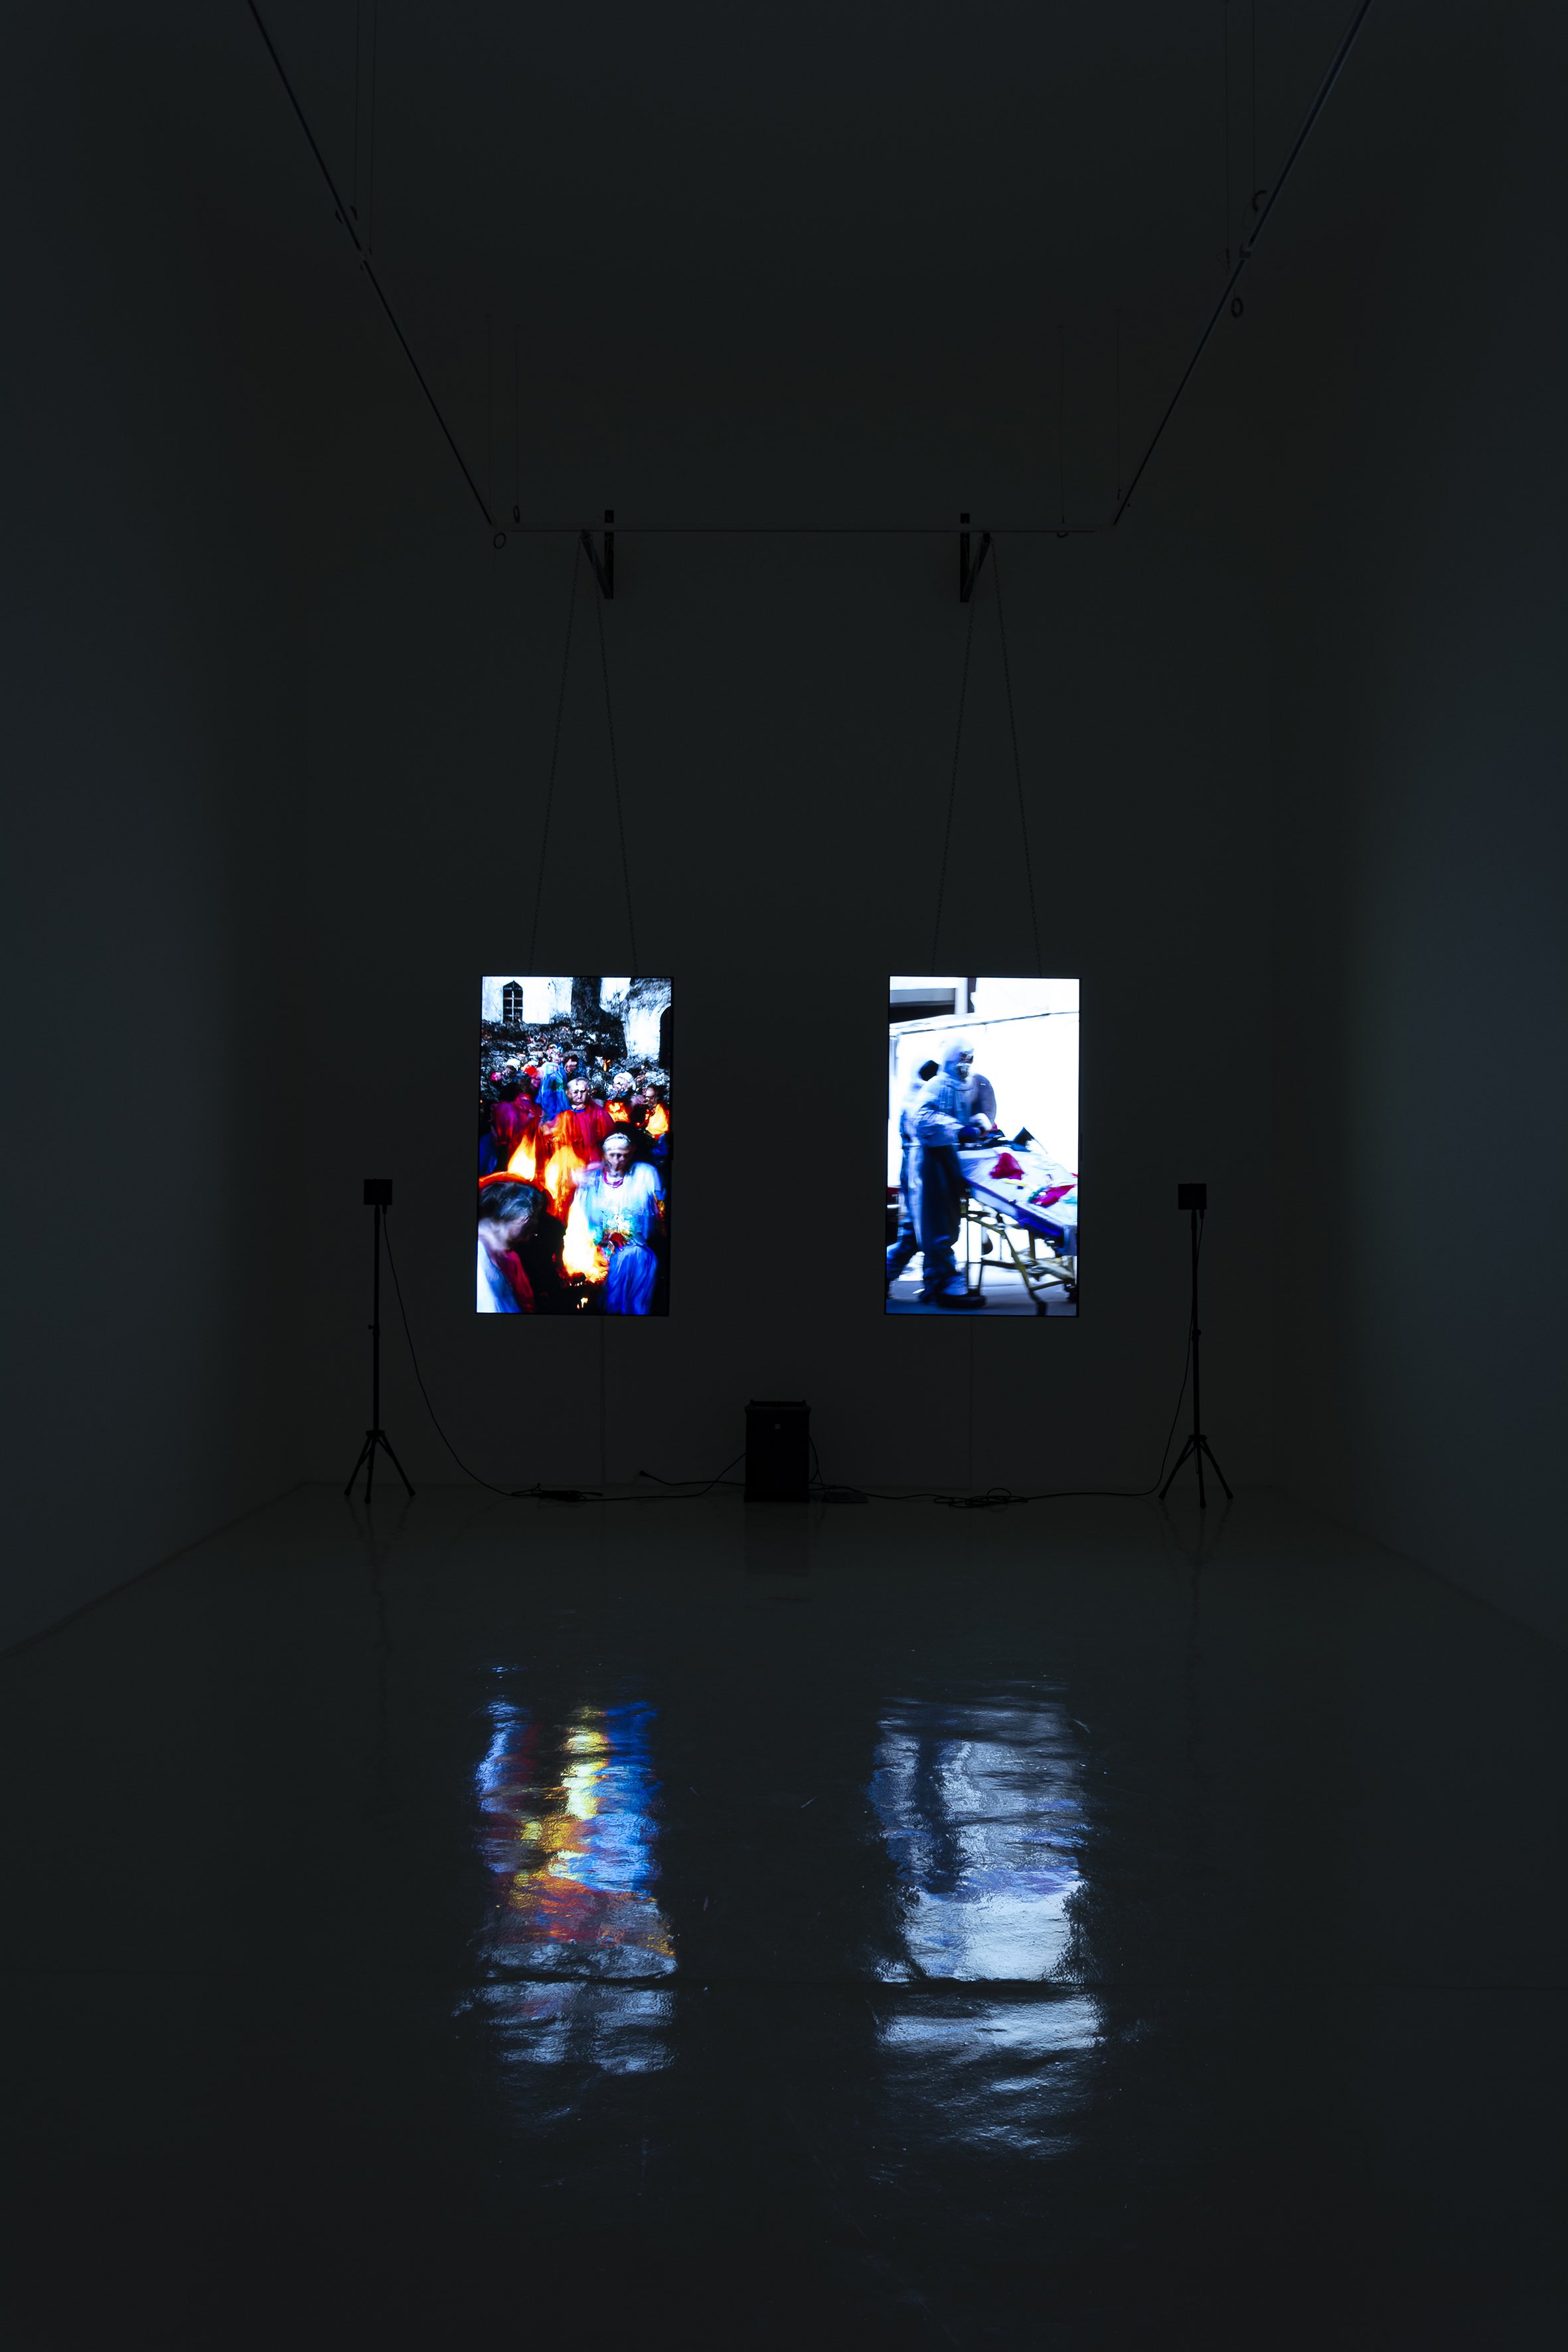 Vista de la exposición de Gabriel O’Shea “Preludio” en Galería Hilario Galguera.
© Galería Hilario Galguera. Foto: Victor Mendoza.